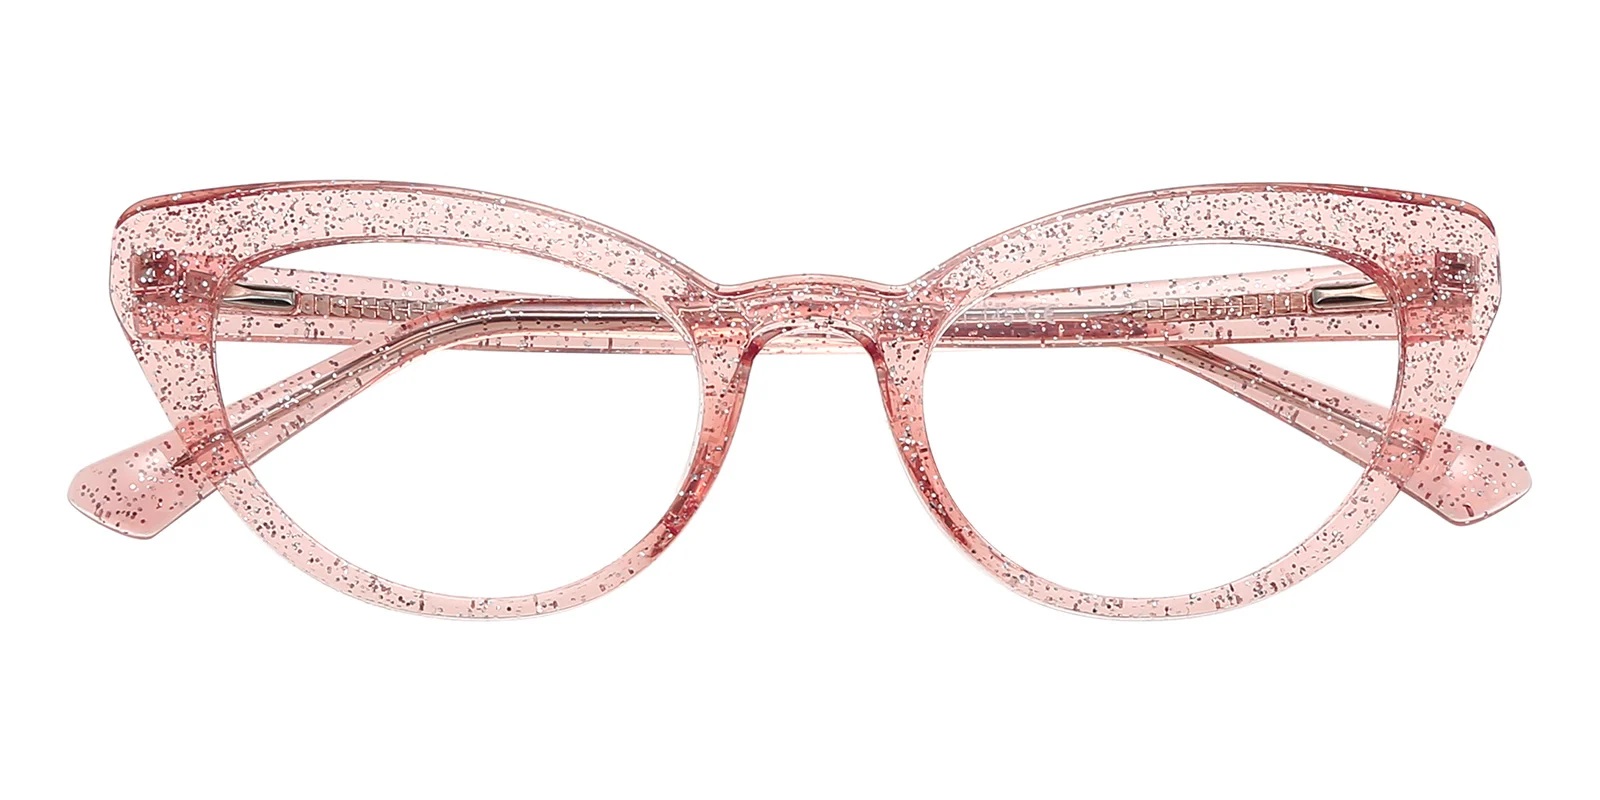 Stylish Eyeglasses With Sunglasses Magnetic